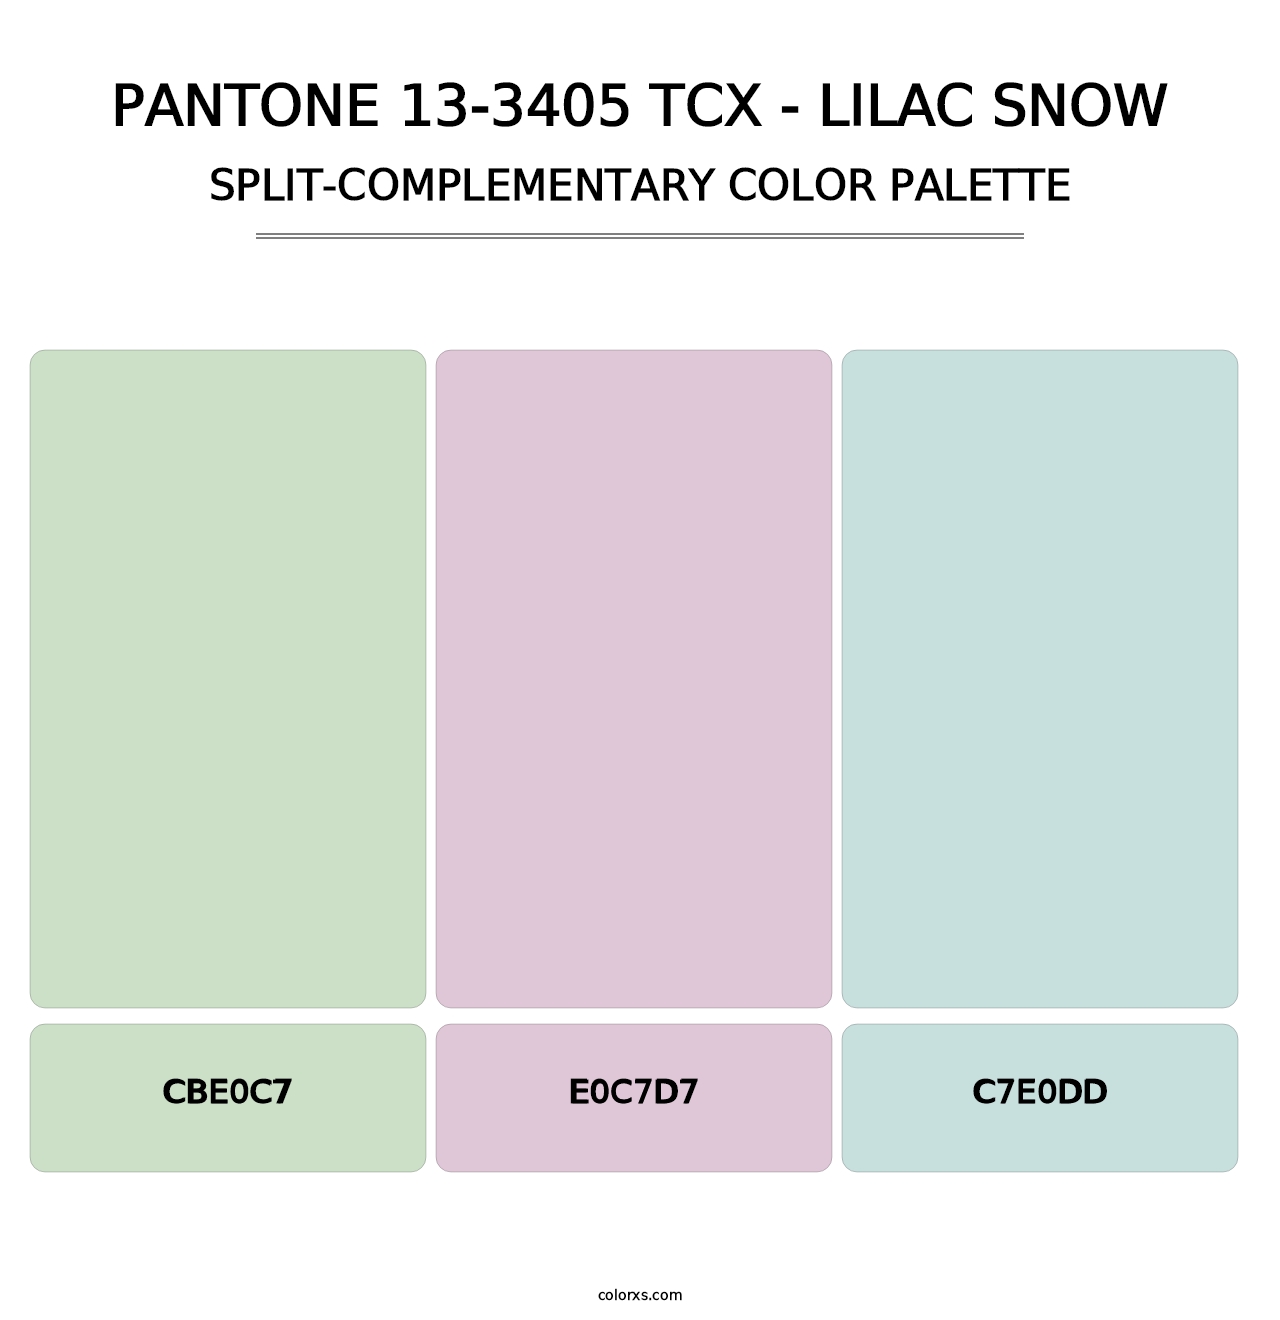 PANTONE 13-3405 TCX - Lilac Snow - Split-Complementary Color Palette